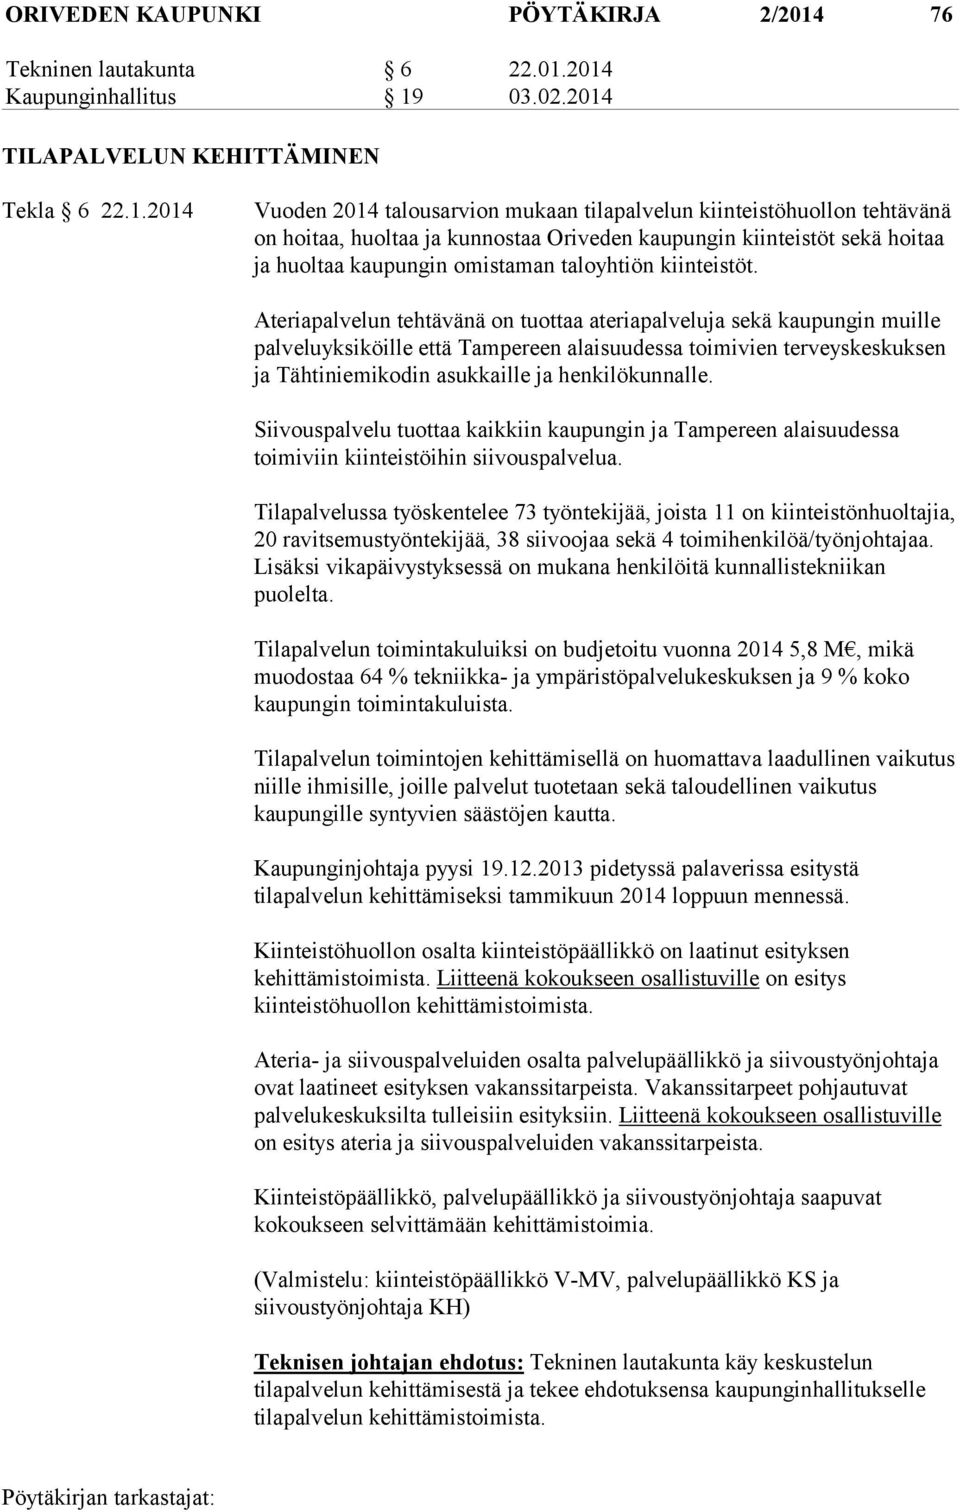 2014 Kaupunginhallitus 19 03.02.2014 TILAPALVELUN KEHITTÄMINEN Tekla 6 22.1.2014 Vuoden 2014 talousarvion mukaan tilapalvelun kiinteistöhuollon tehtävänä on hoitaa, huoltaa ja kunnostaa Oriveden